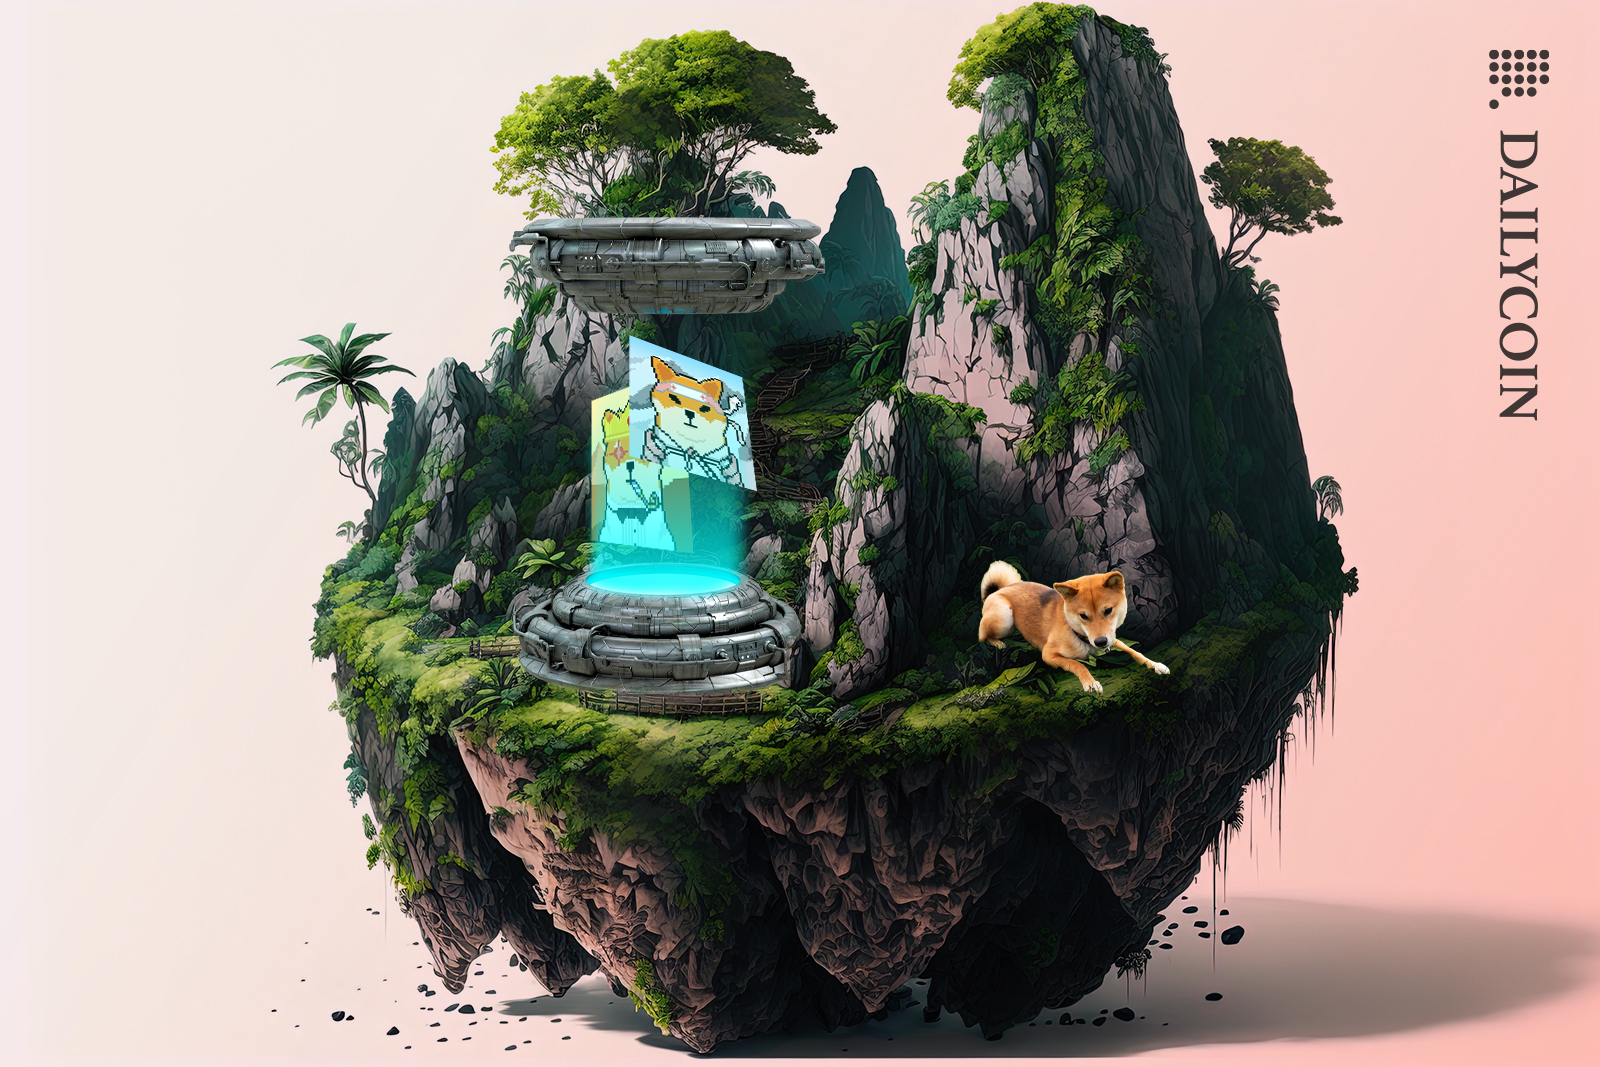 Shiba inu sitting on a jungle island. A portal on the island has Shiboshis NFTs.